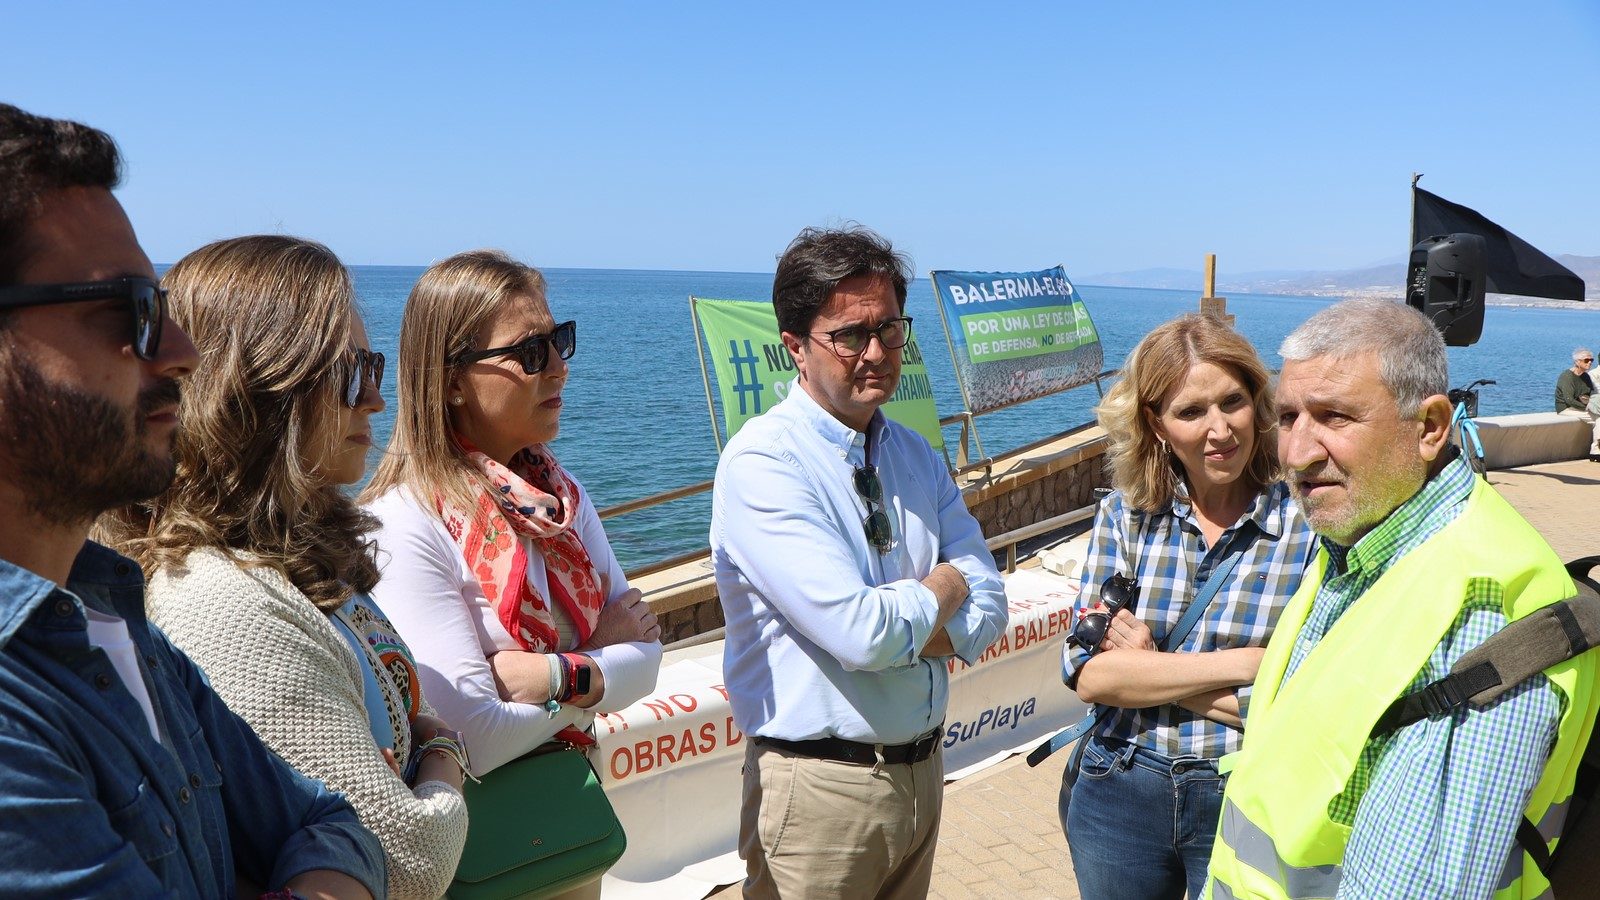 El Ayuntamiento vuelve a exigir a Costas medidas inminentes para la Playa de Balerma, que “no puede esperar más”